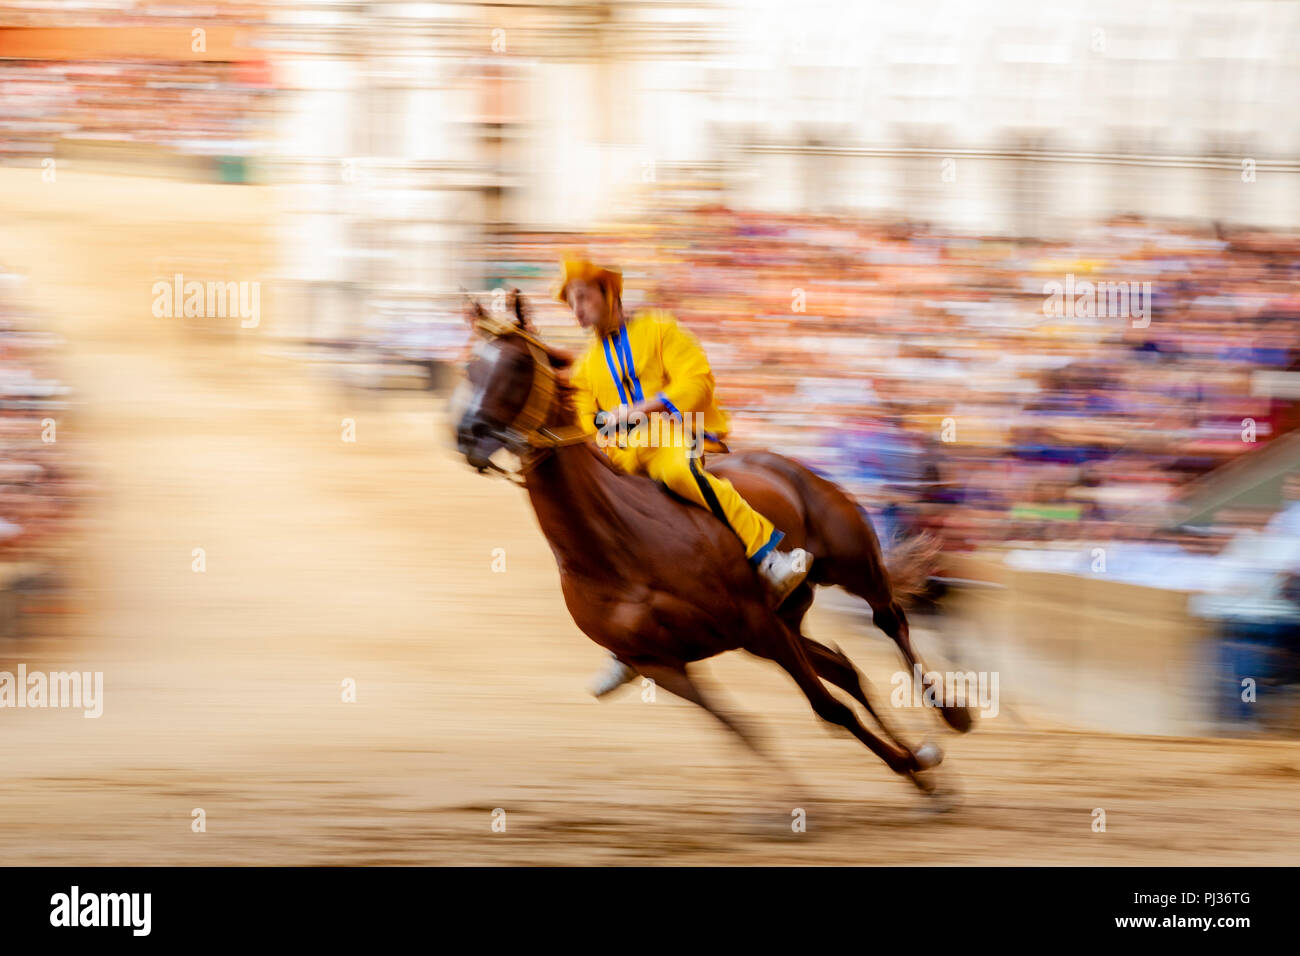 Un jockey à cheval pour l'Aquila (Aigle) via prend part à une course d'essai dans la Piazza del Campo, le Palio di Siena, Sienne, Italie Banque D'Images